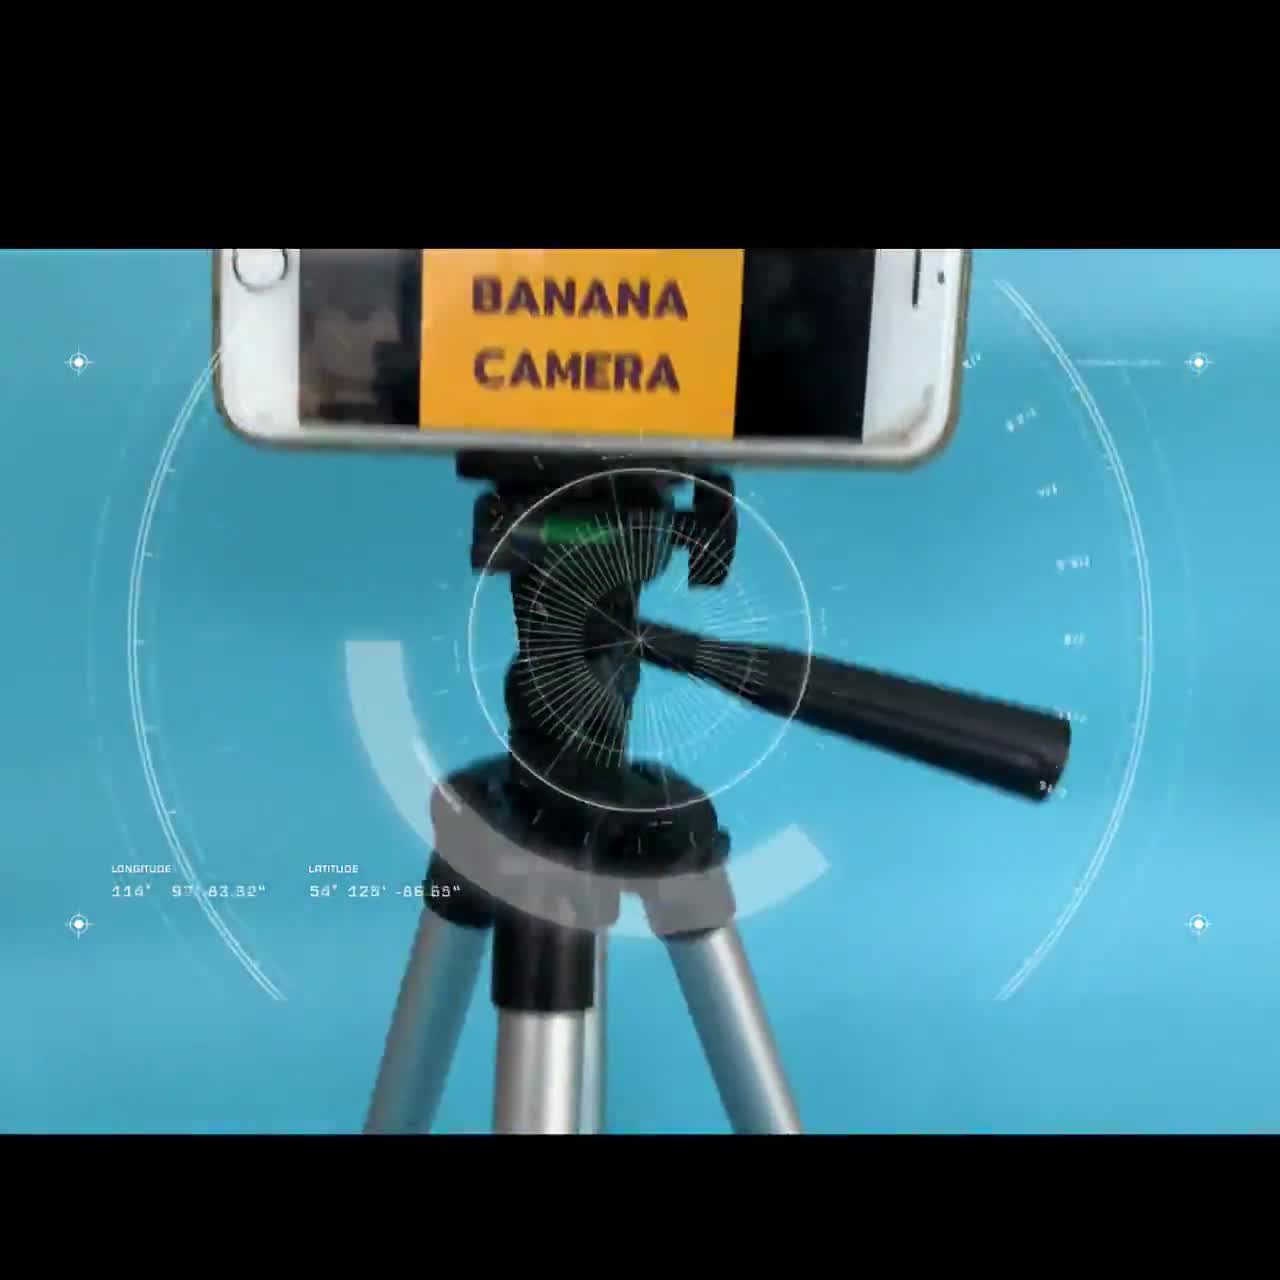 ขาตั้งกล้อง-ขาตั้ง-iphone-ขาตั้งกล้องโทรศัพท์-ขาตั้งกล้องมือถือพกพา-ขาตั้งมือถือถ่ายรูป-ขาตั้งกล้องพกพา-banana-camera